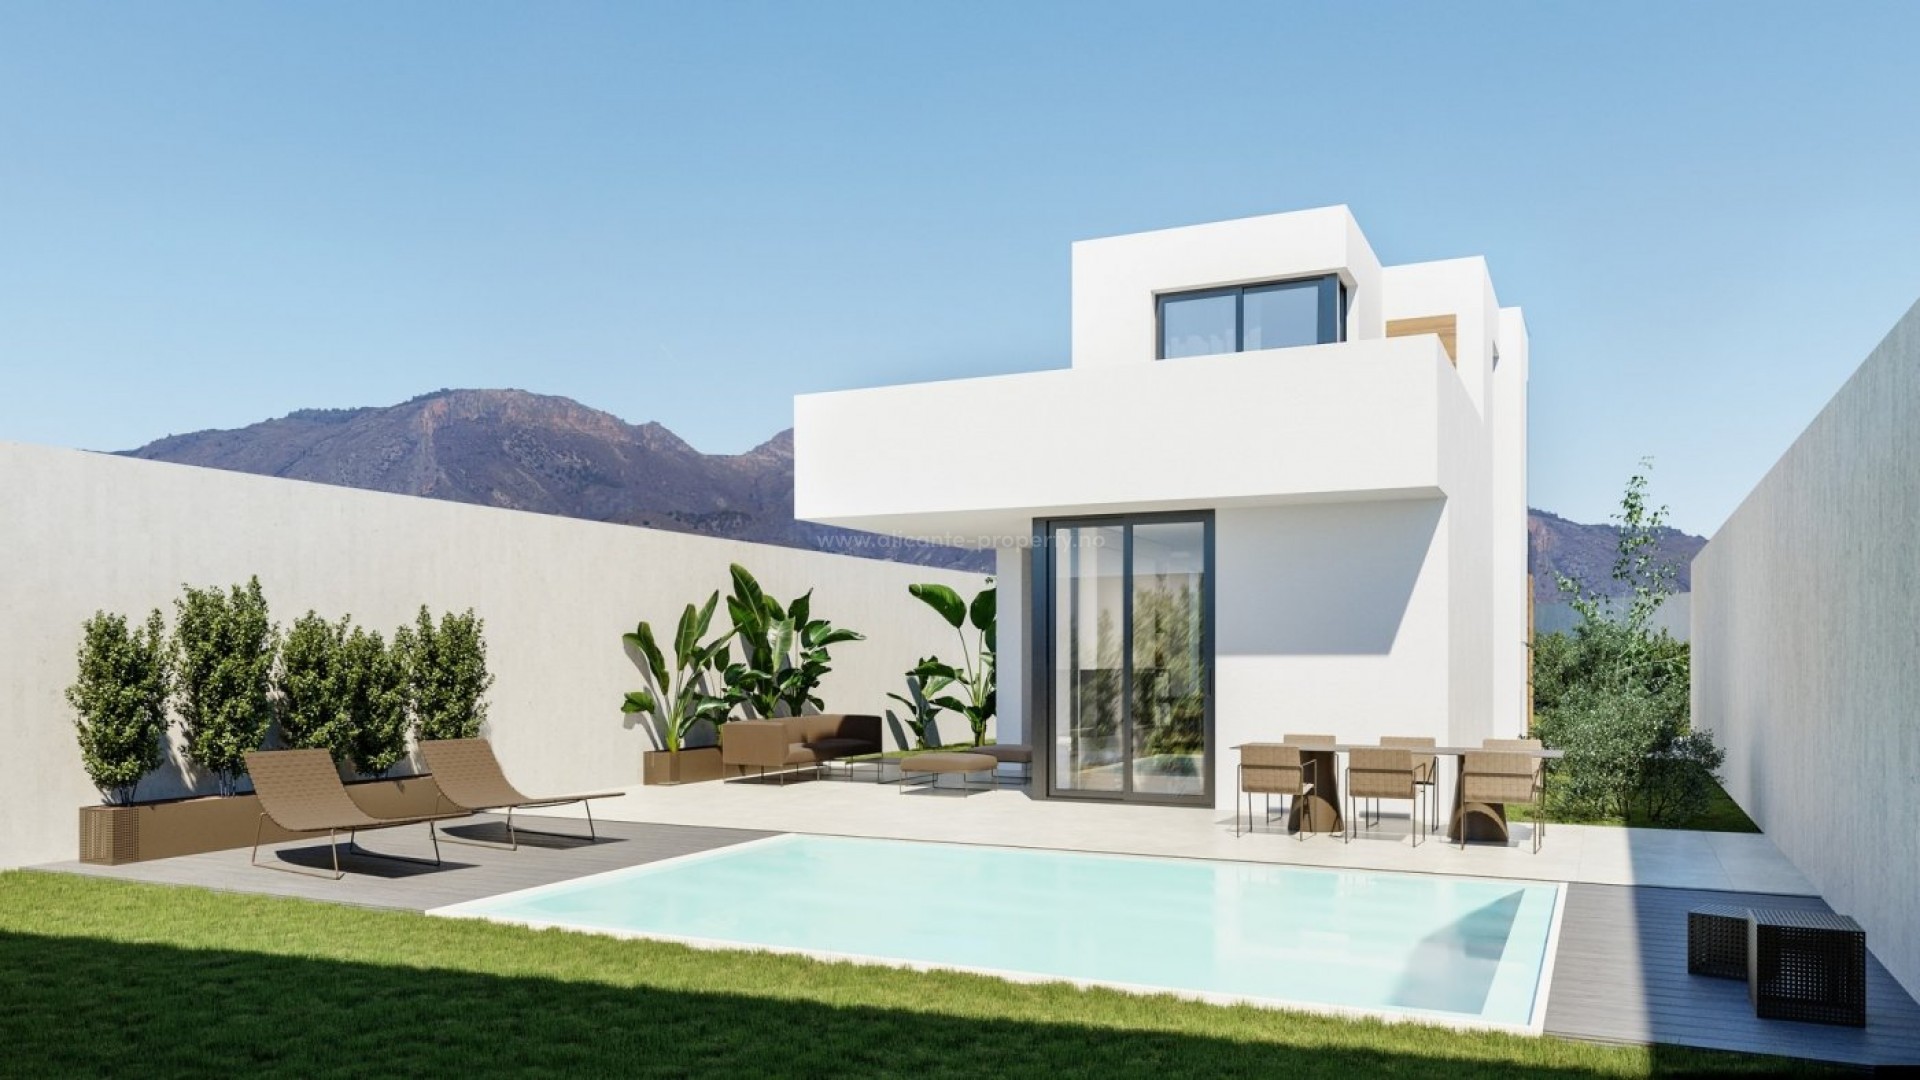 Helt nye hus/villaer i Polop, Alicante, 3 soverom og 2 bad, privat basseng, hage og tomt med egen parkeringsplass